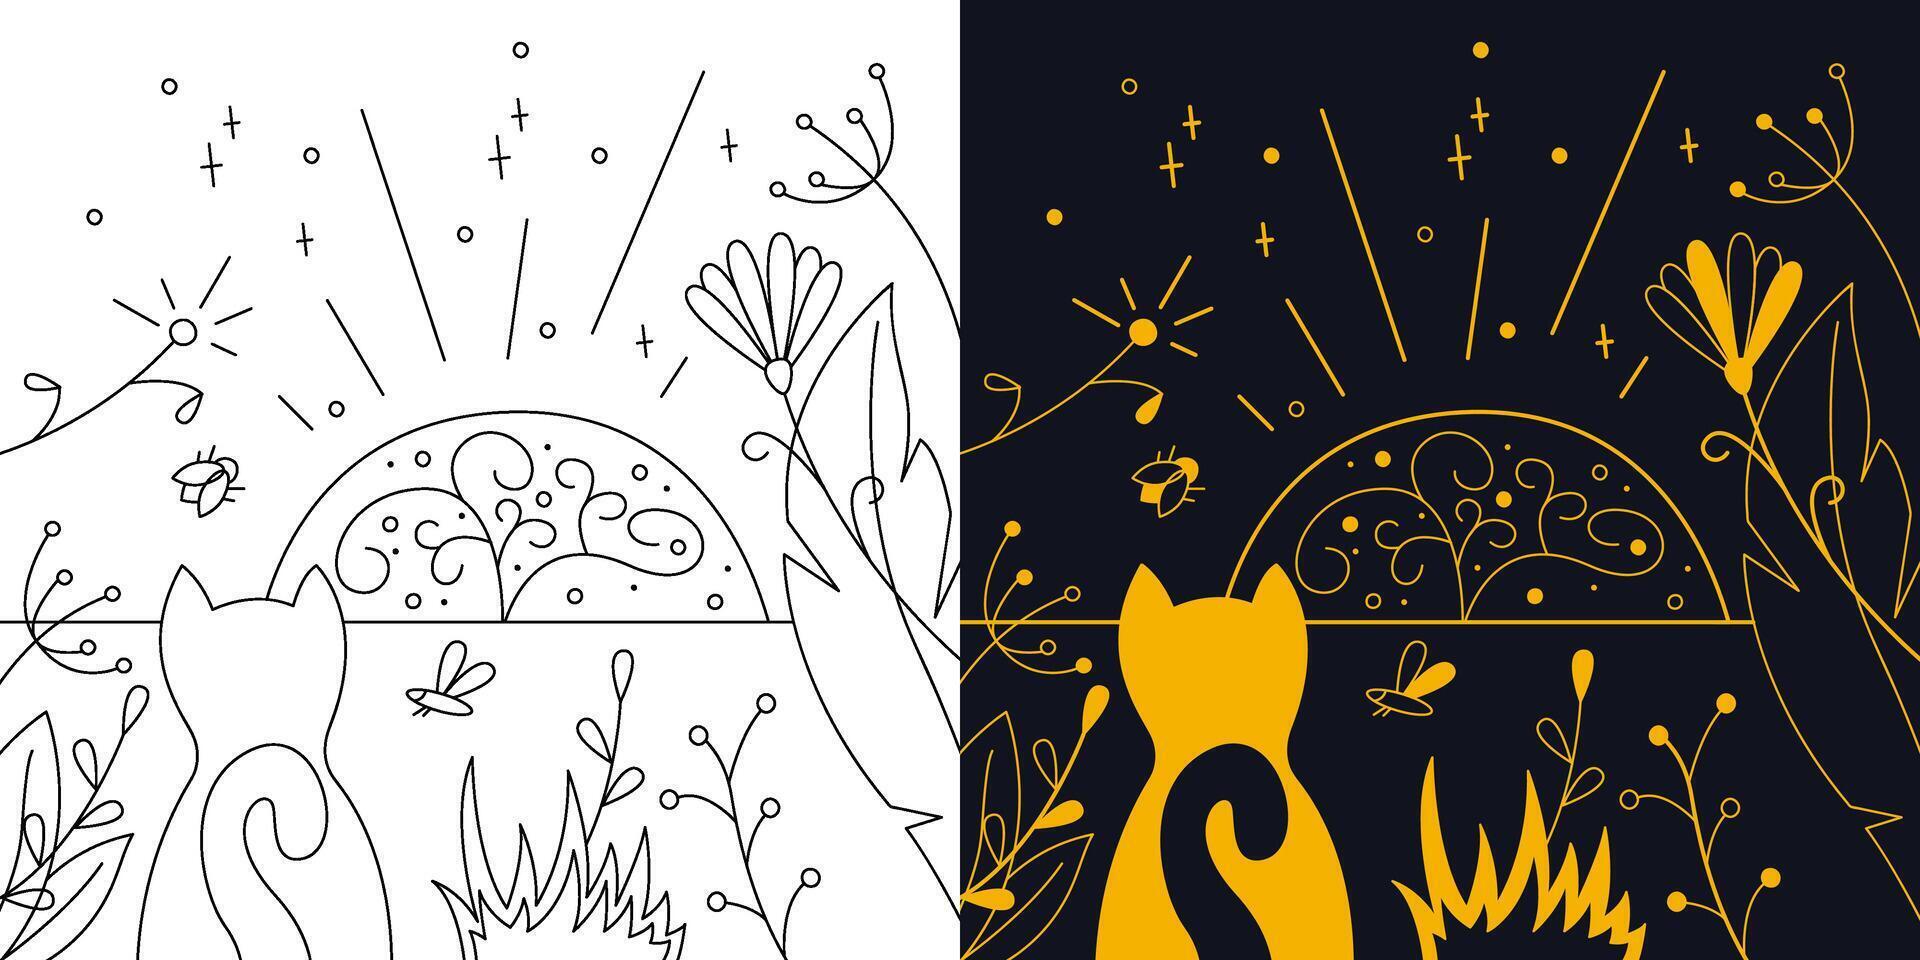 místico panorama com flores e uma gato. bicolor e Preto e branco esboço vetor ilustração.